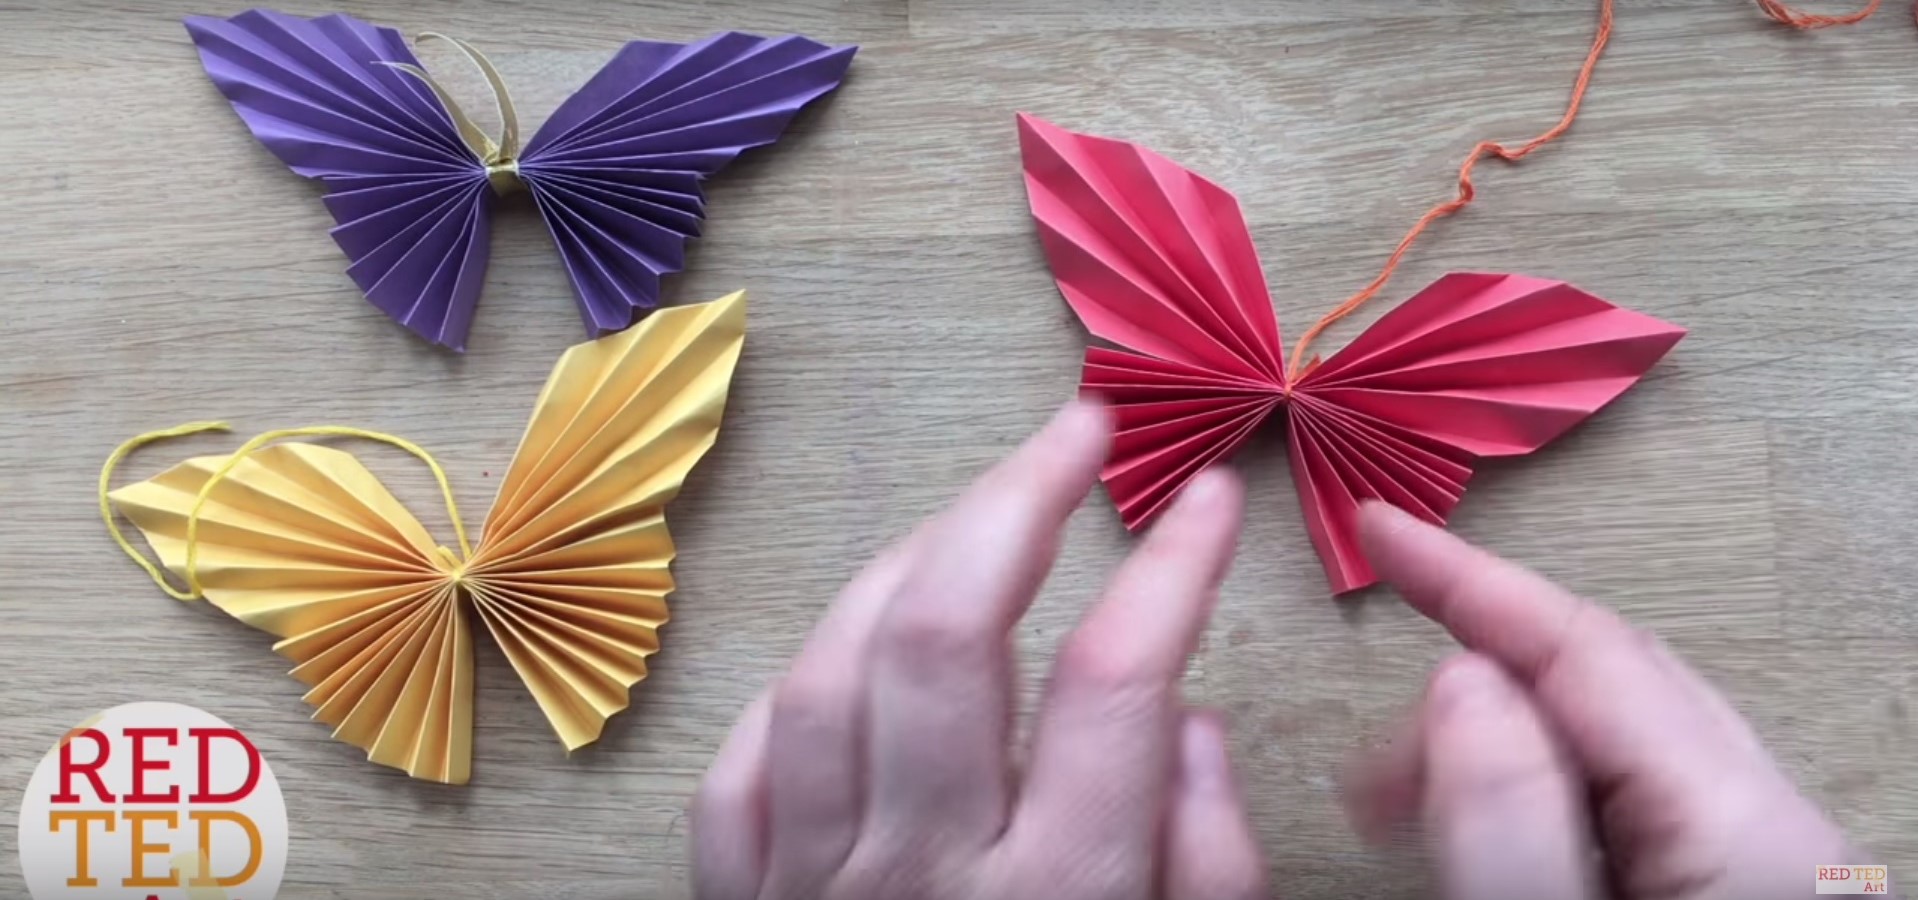 Farfalle Di Carta Come Realizzarle In Un Attimo Il Video